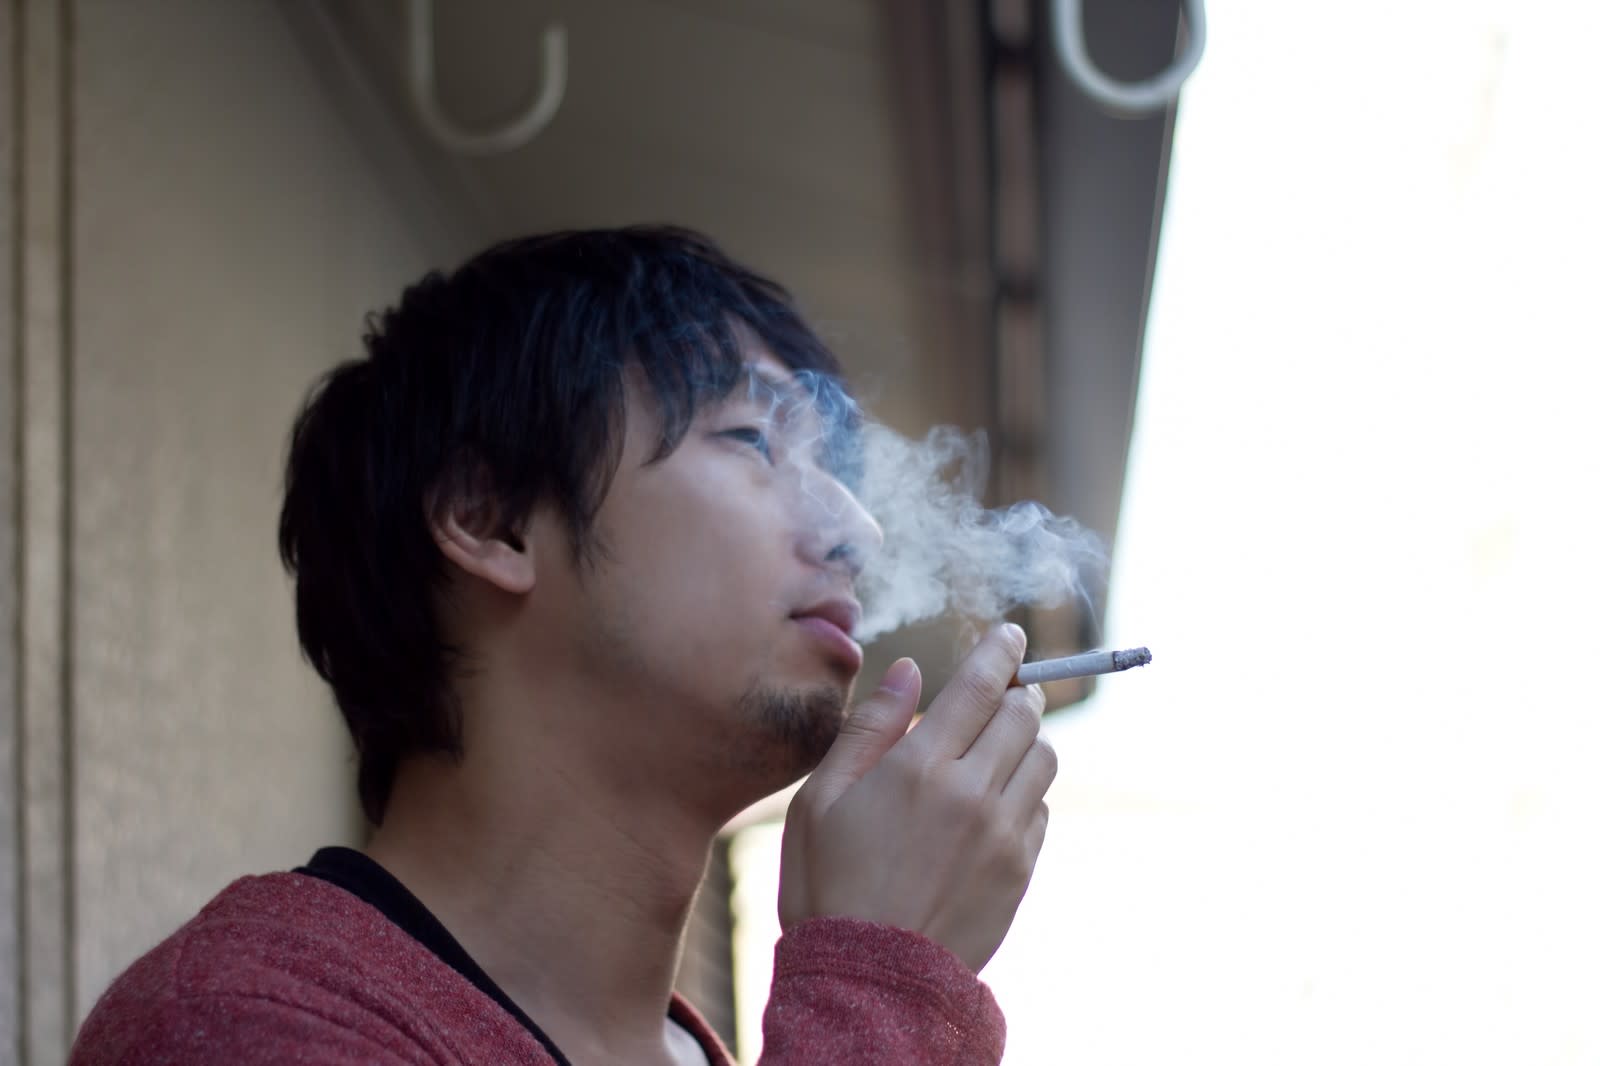 タバコ増税で再注目 Iqosの5倍お得な 第四の加熱式タバコ ヴェポライザー最新情報 世永玲生 Engadget 日本版